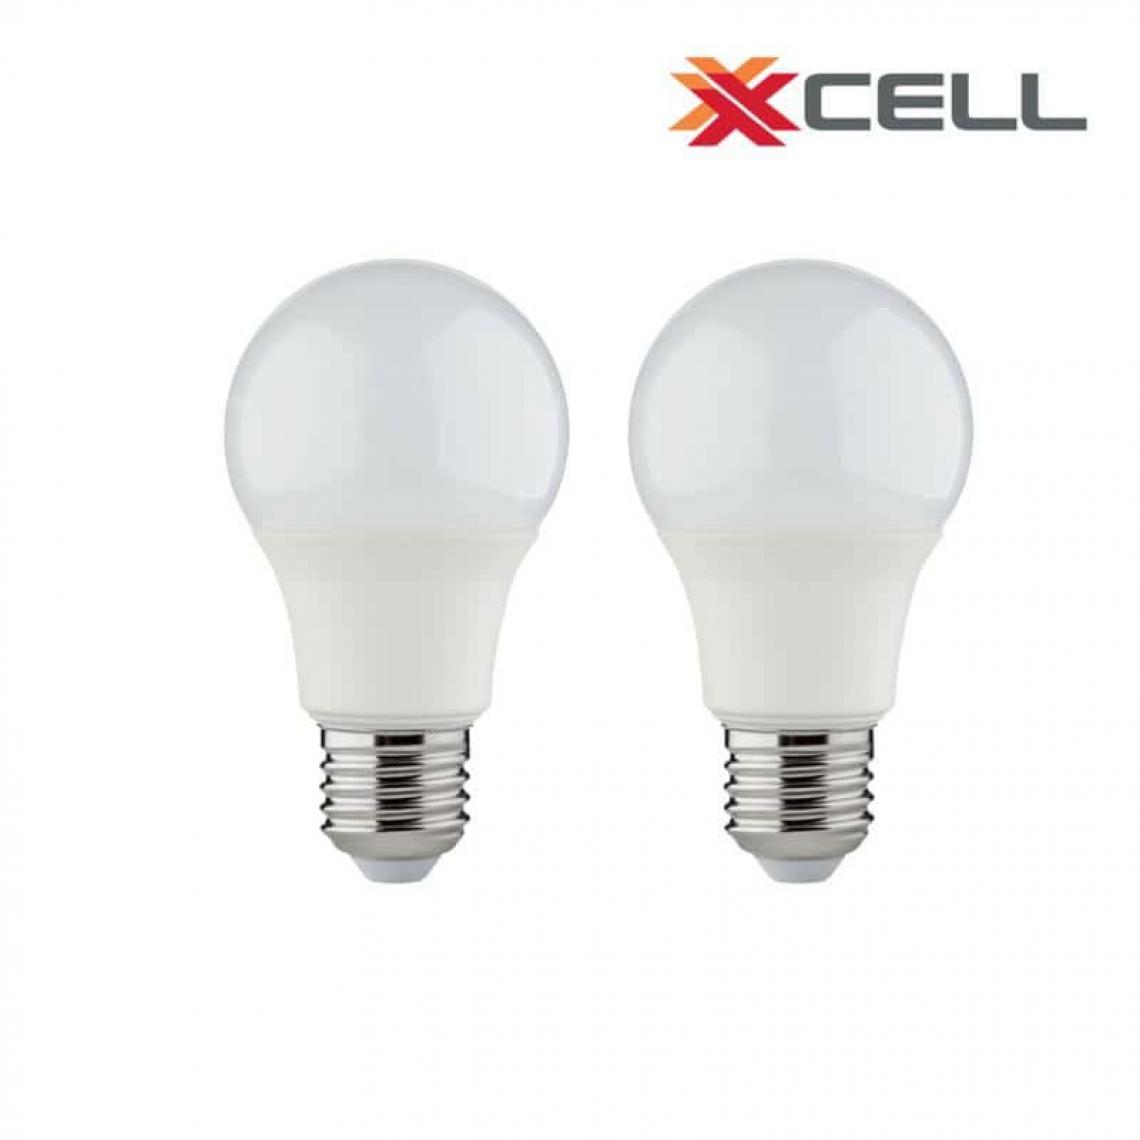 Xxcell - Ampoule LED XXCELL Standard - E27 équivalent 60W x2 - Ampoules LED